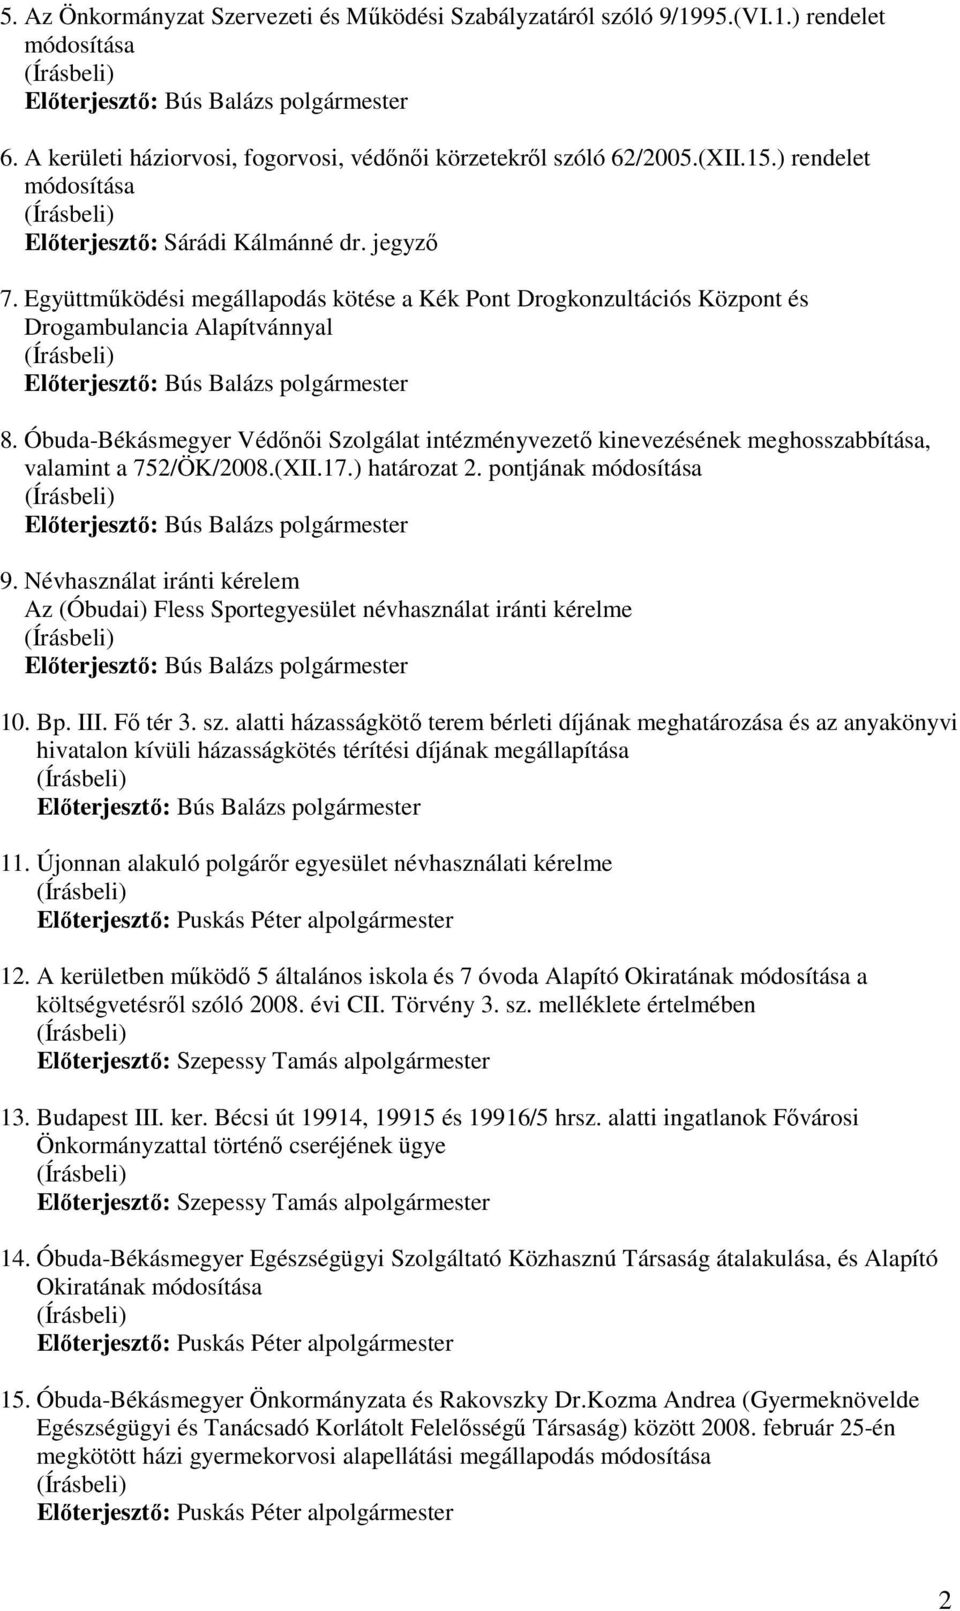 Óbuda-Békásmegyer Védınıi Szolgálat intézményvezetı kinevezésének meghosszabbítása, valamint a 752/ÖK/2008.(XII.17.) határozat 2. pontjának módosítása 9.